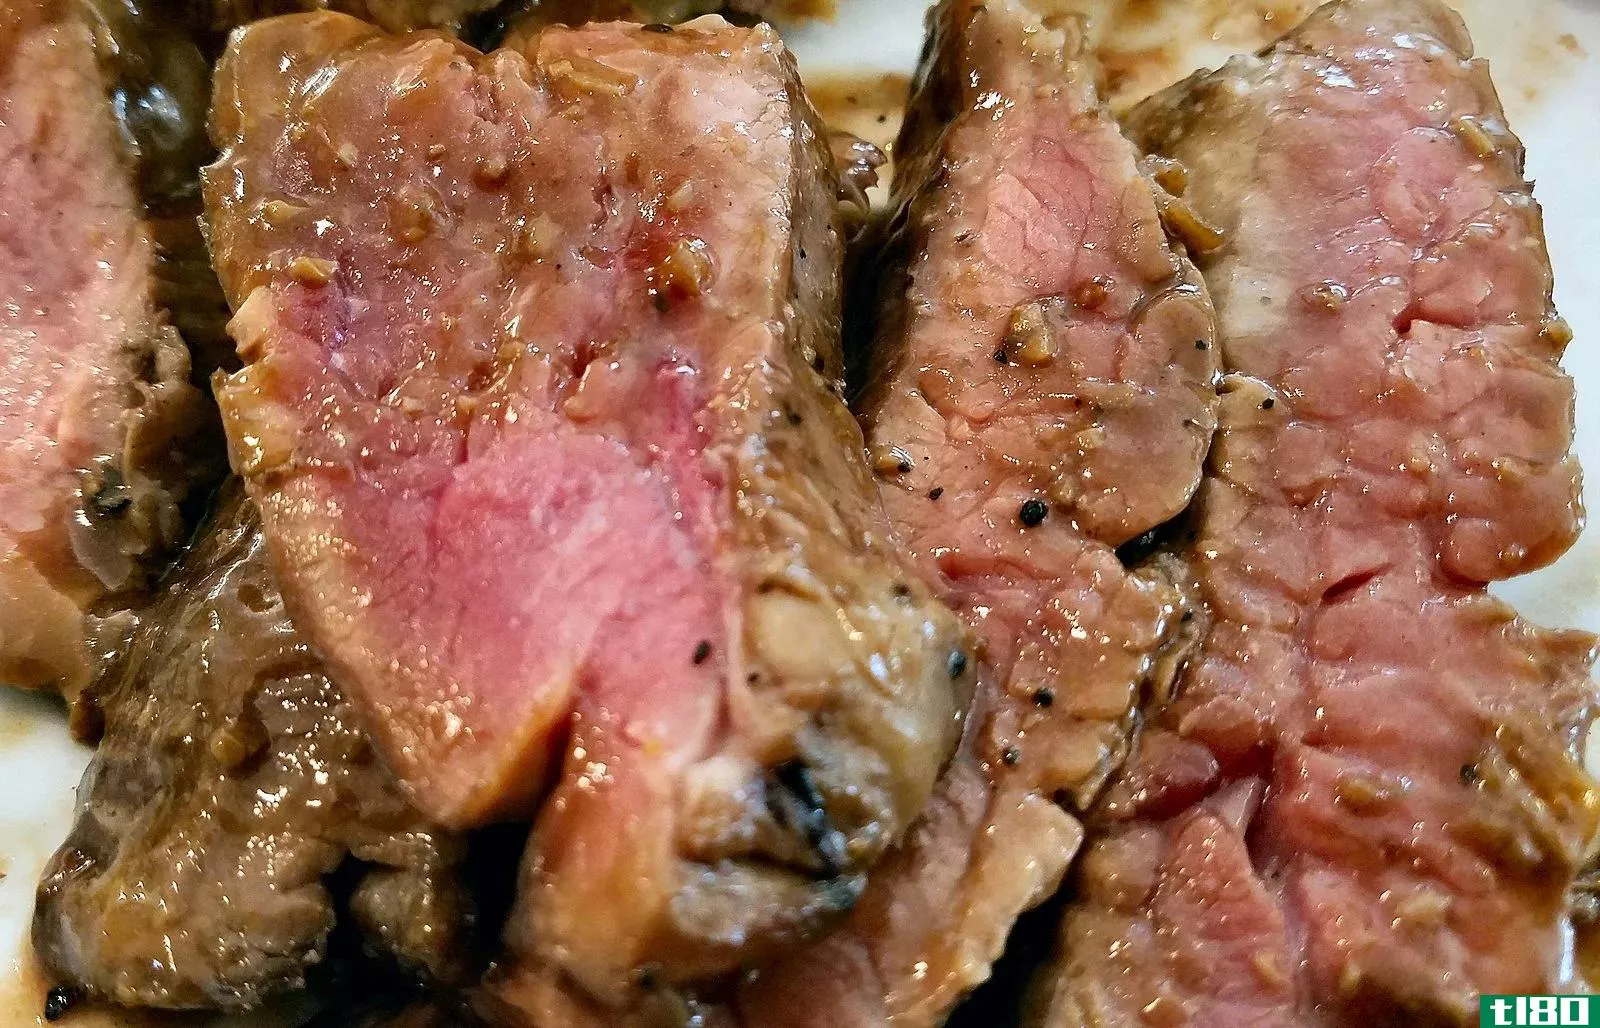 侧翼牛排(flank steak)和伦敦烧烤(london broil)的区别